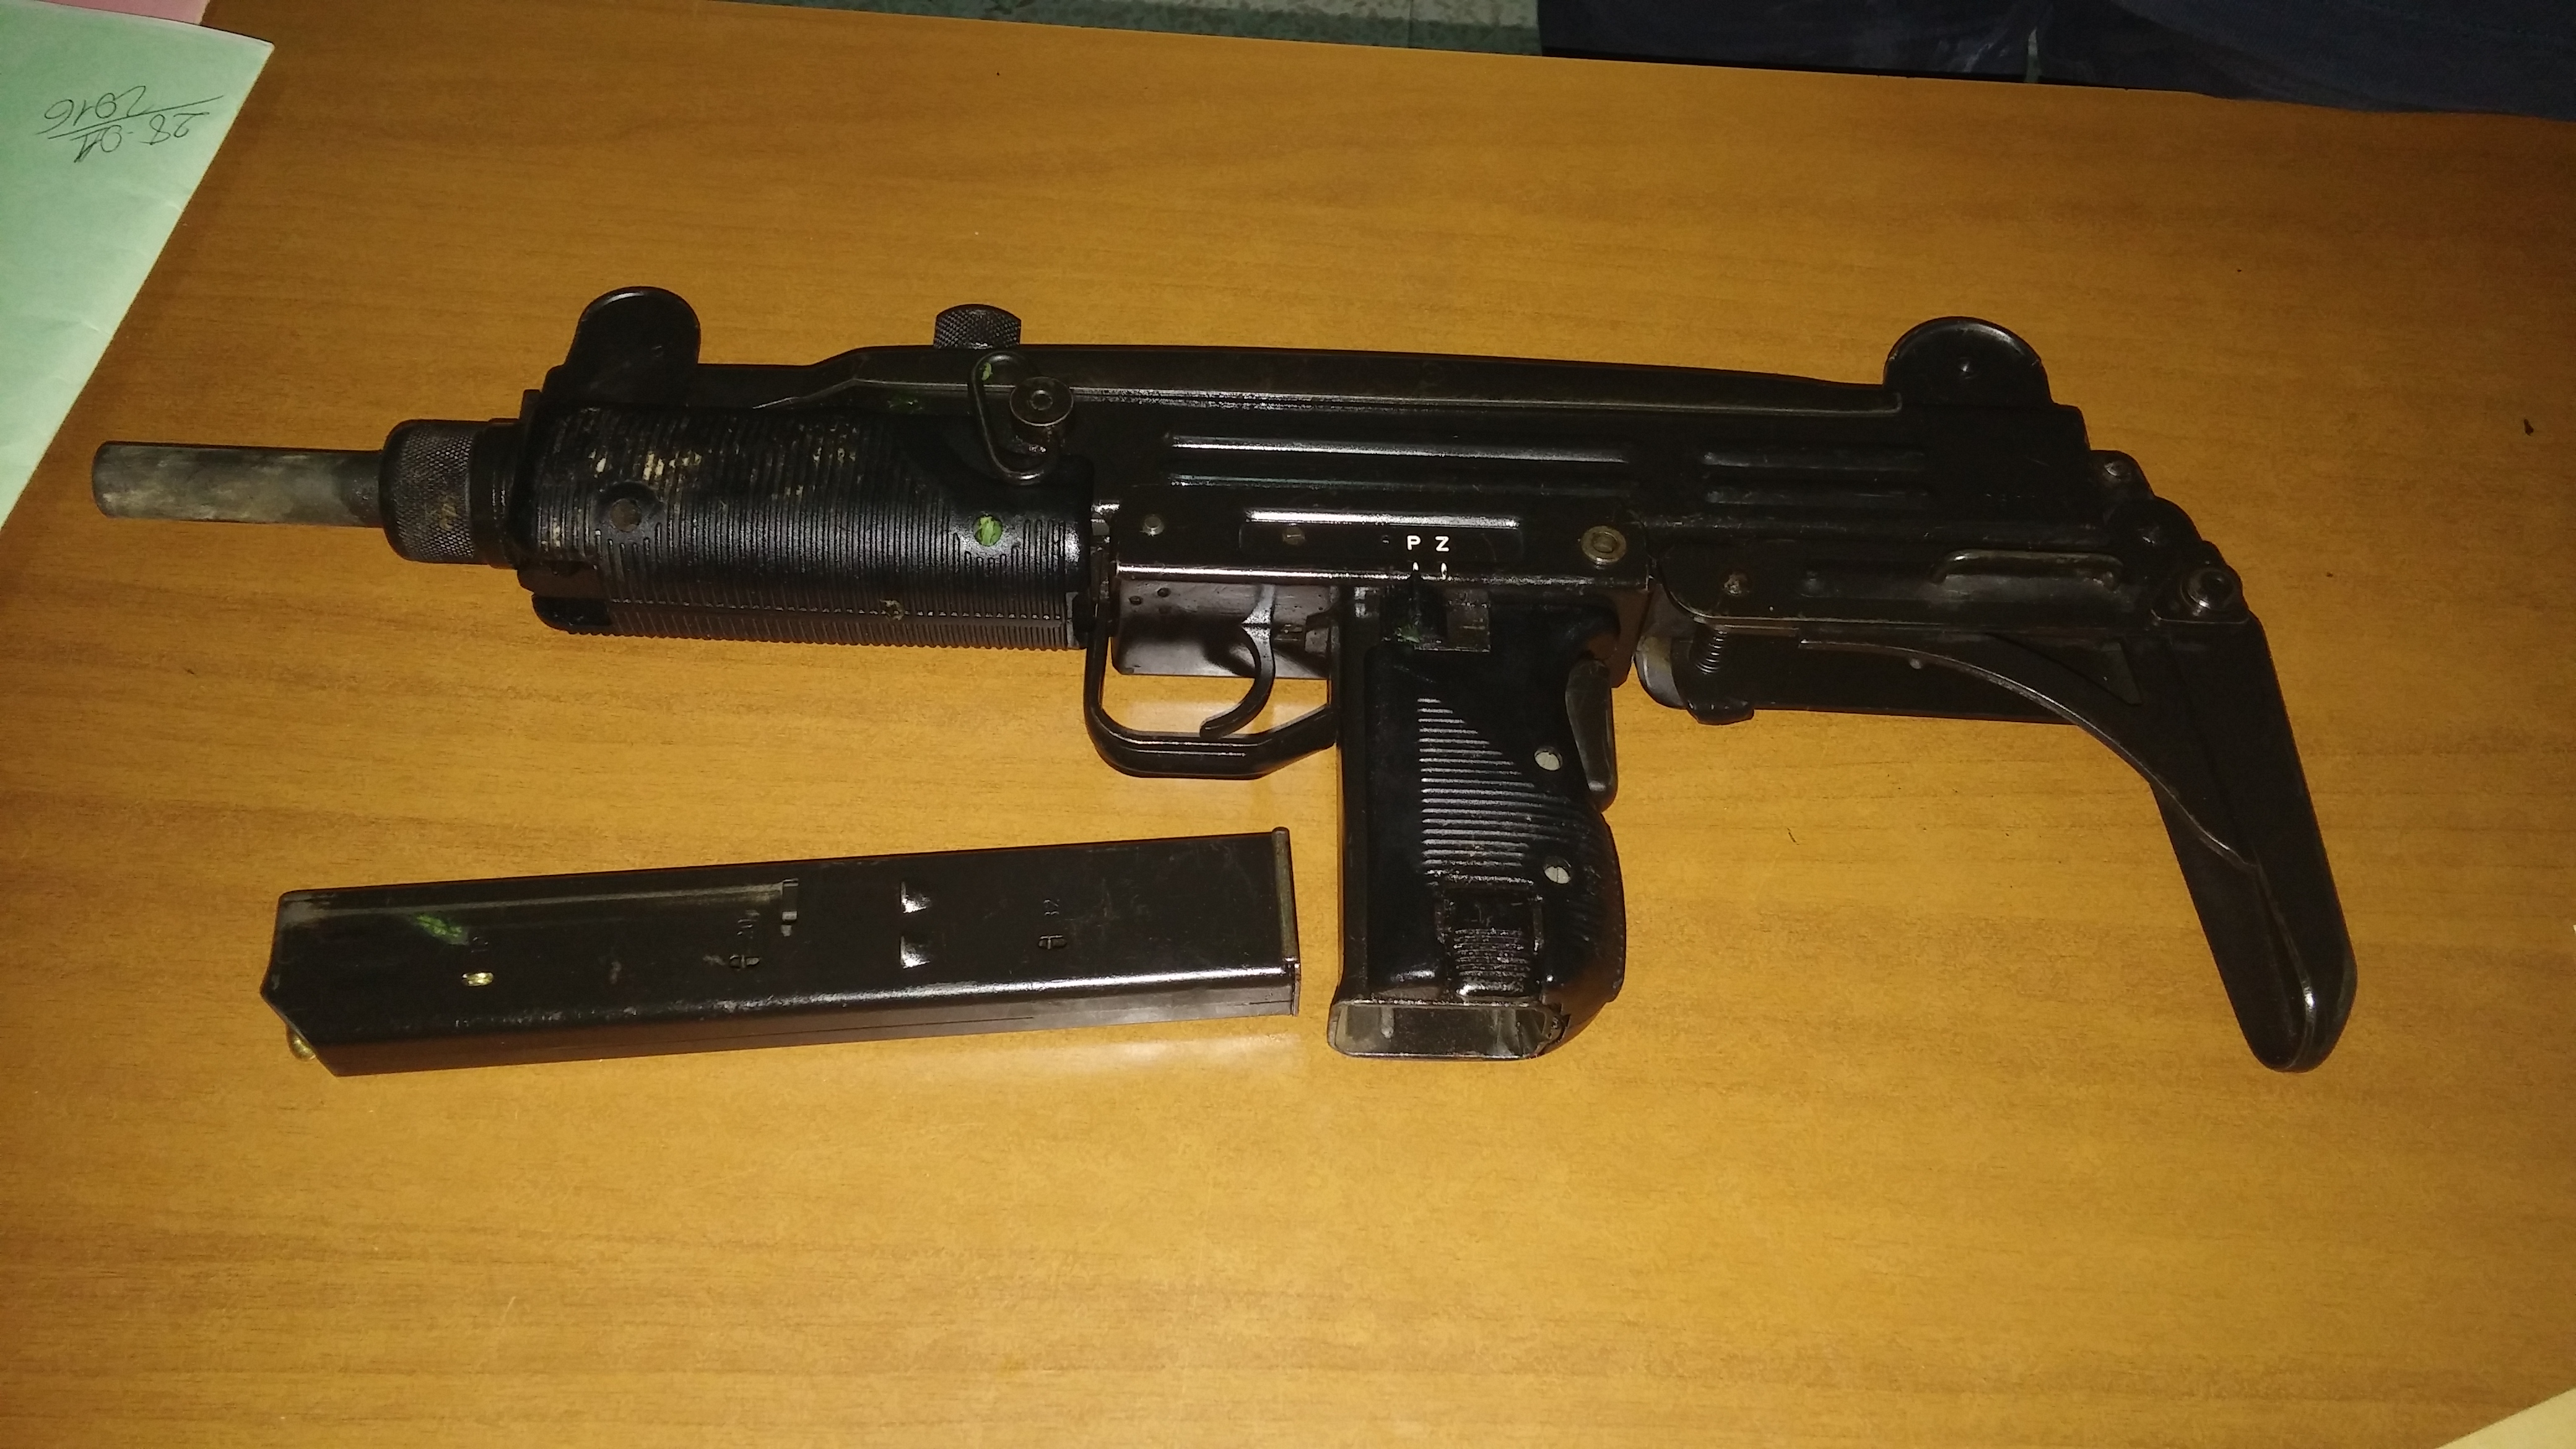 Inferto dalla Polizia di Stato duro colpo alla criminalità a Soccavo: arrestate 3 persone e sequestrata una pistola mitragliatrice Uzi